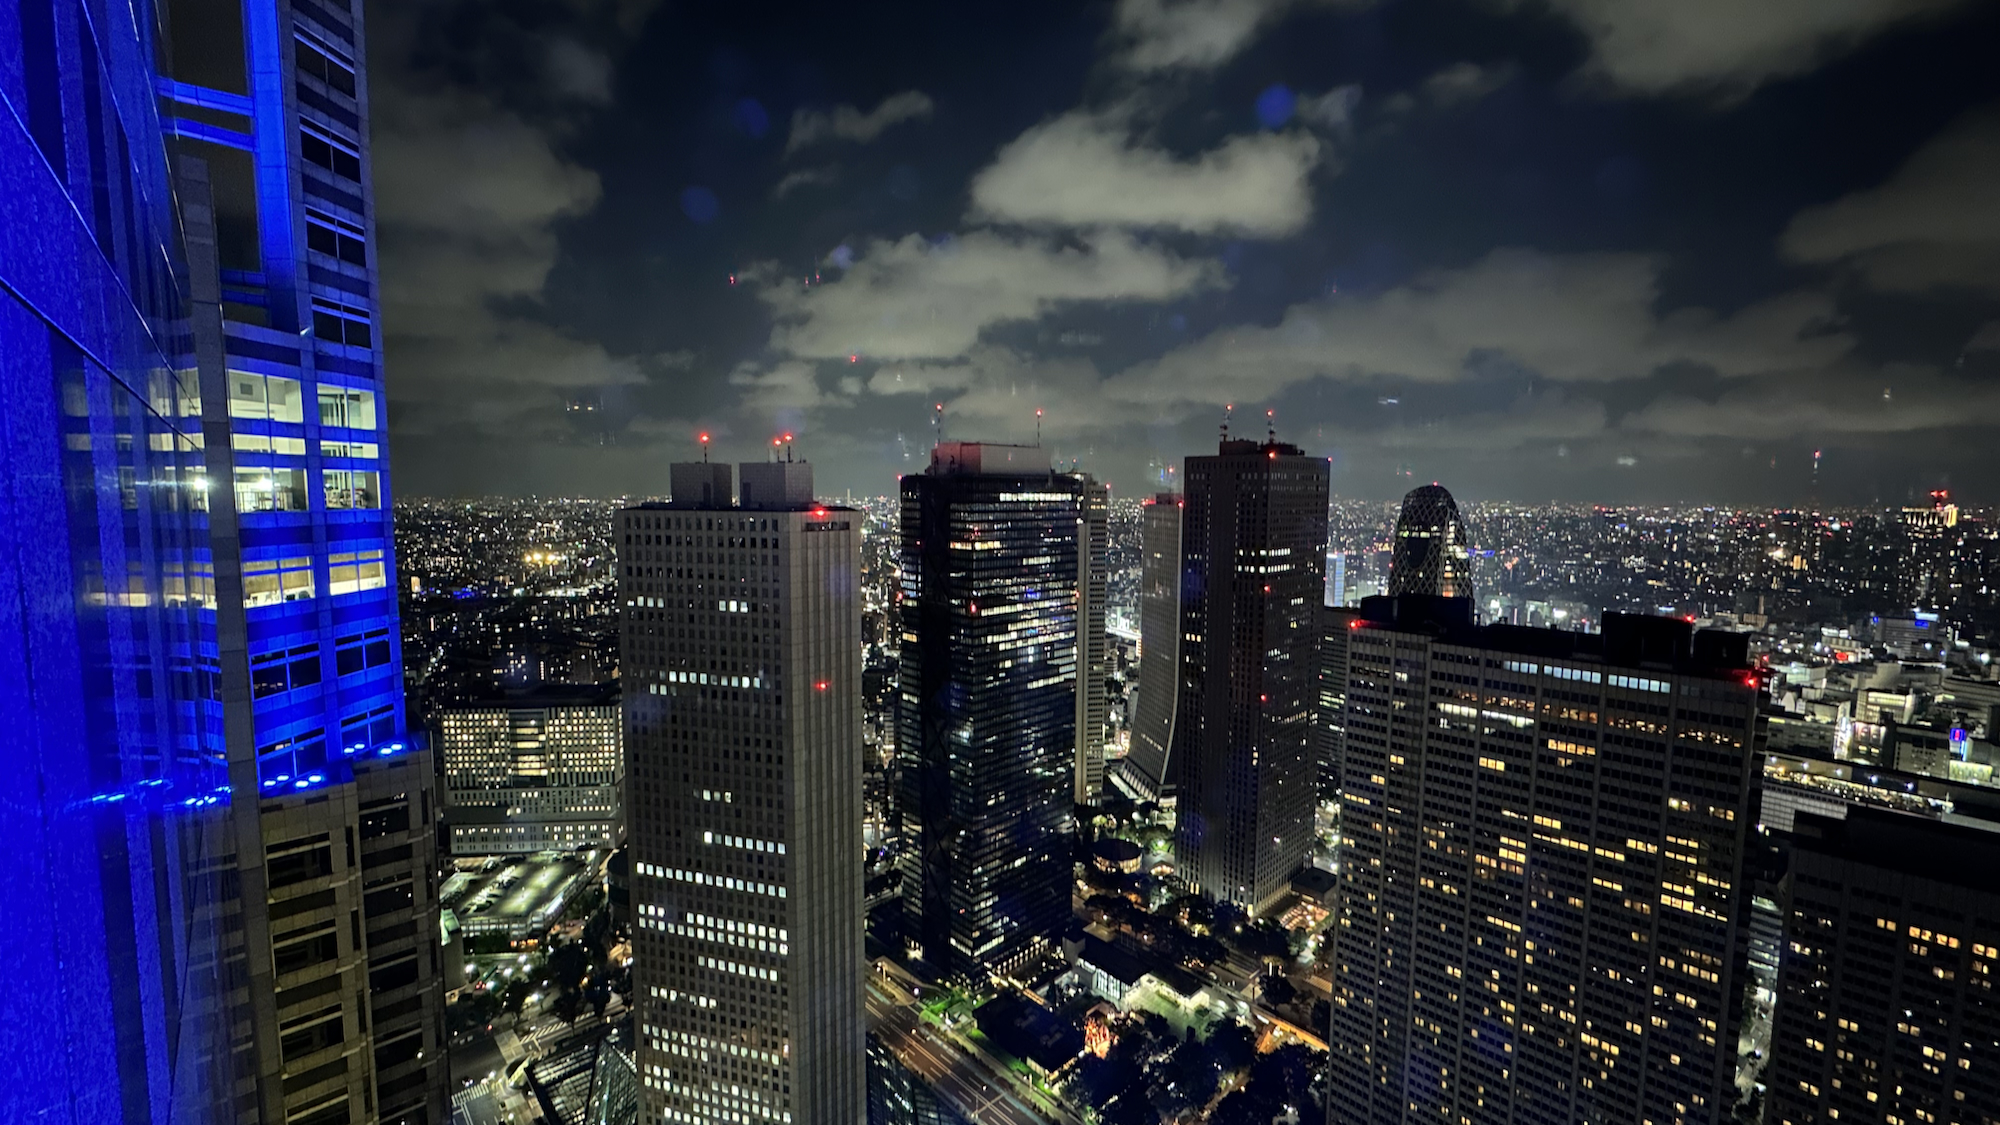 Tokio Aussichtsplattform kostenlos im Tokyo Metropolitan Government Building